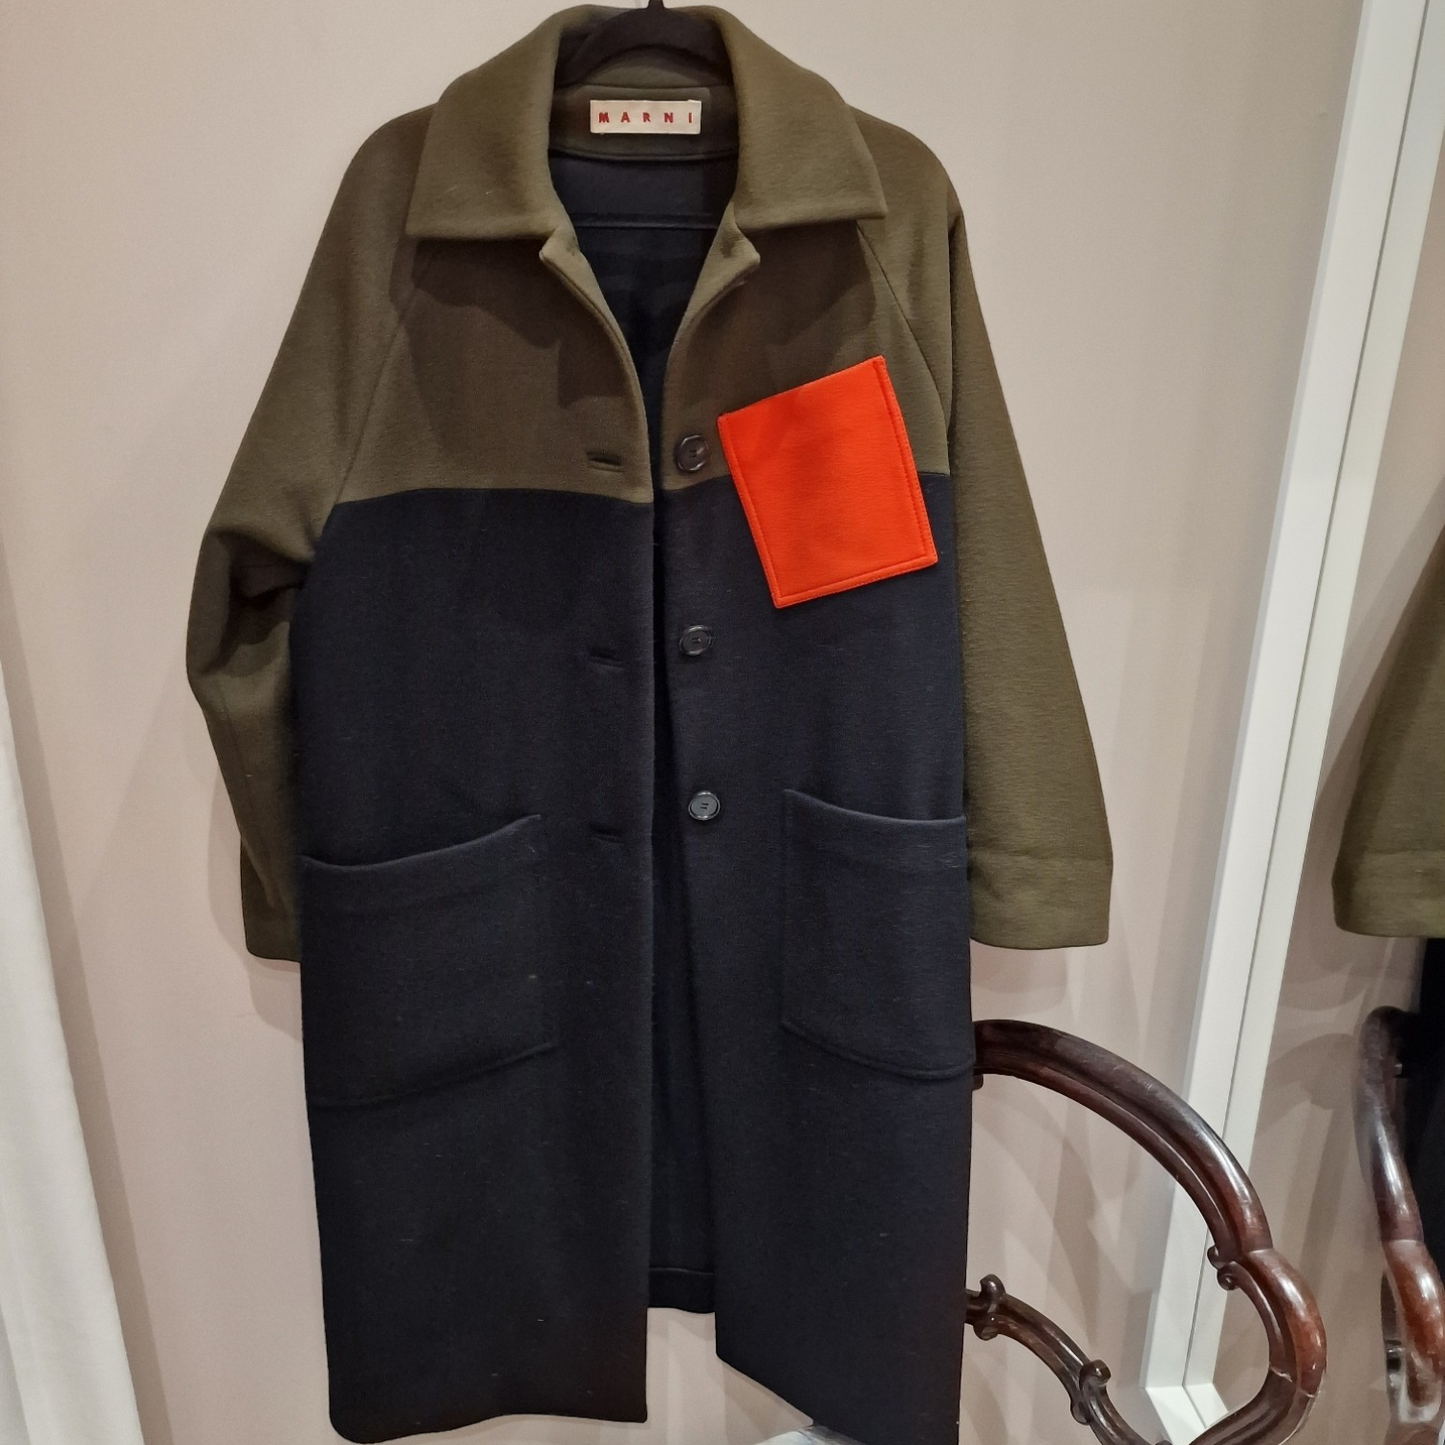 Marni Wool Coat, Black and Khaki, Size 40/UK 14